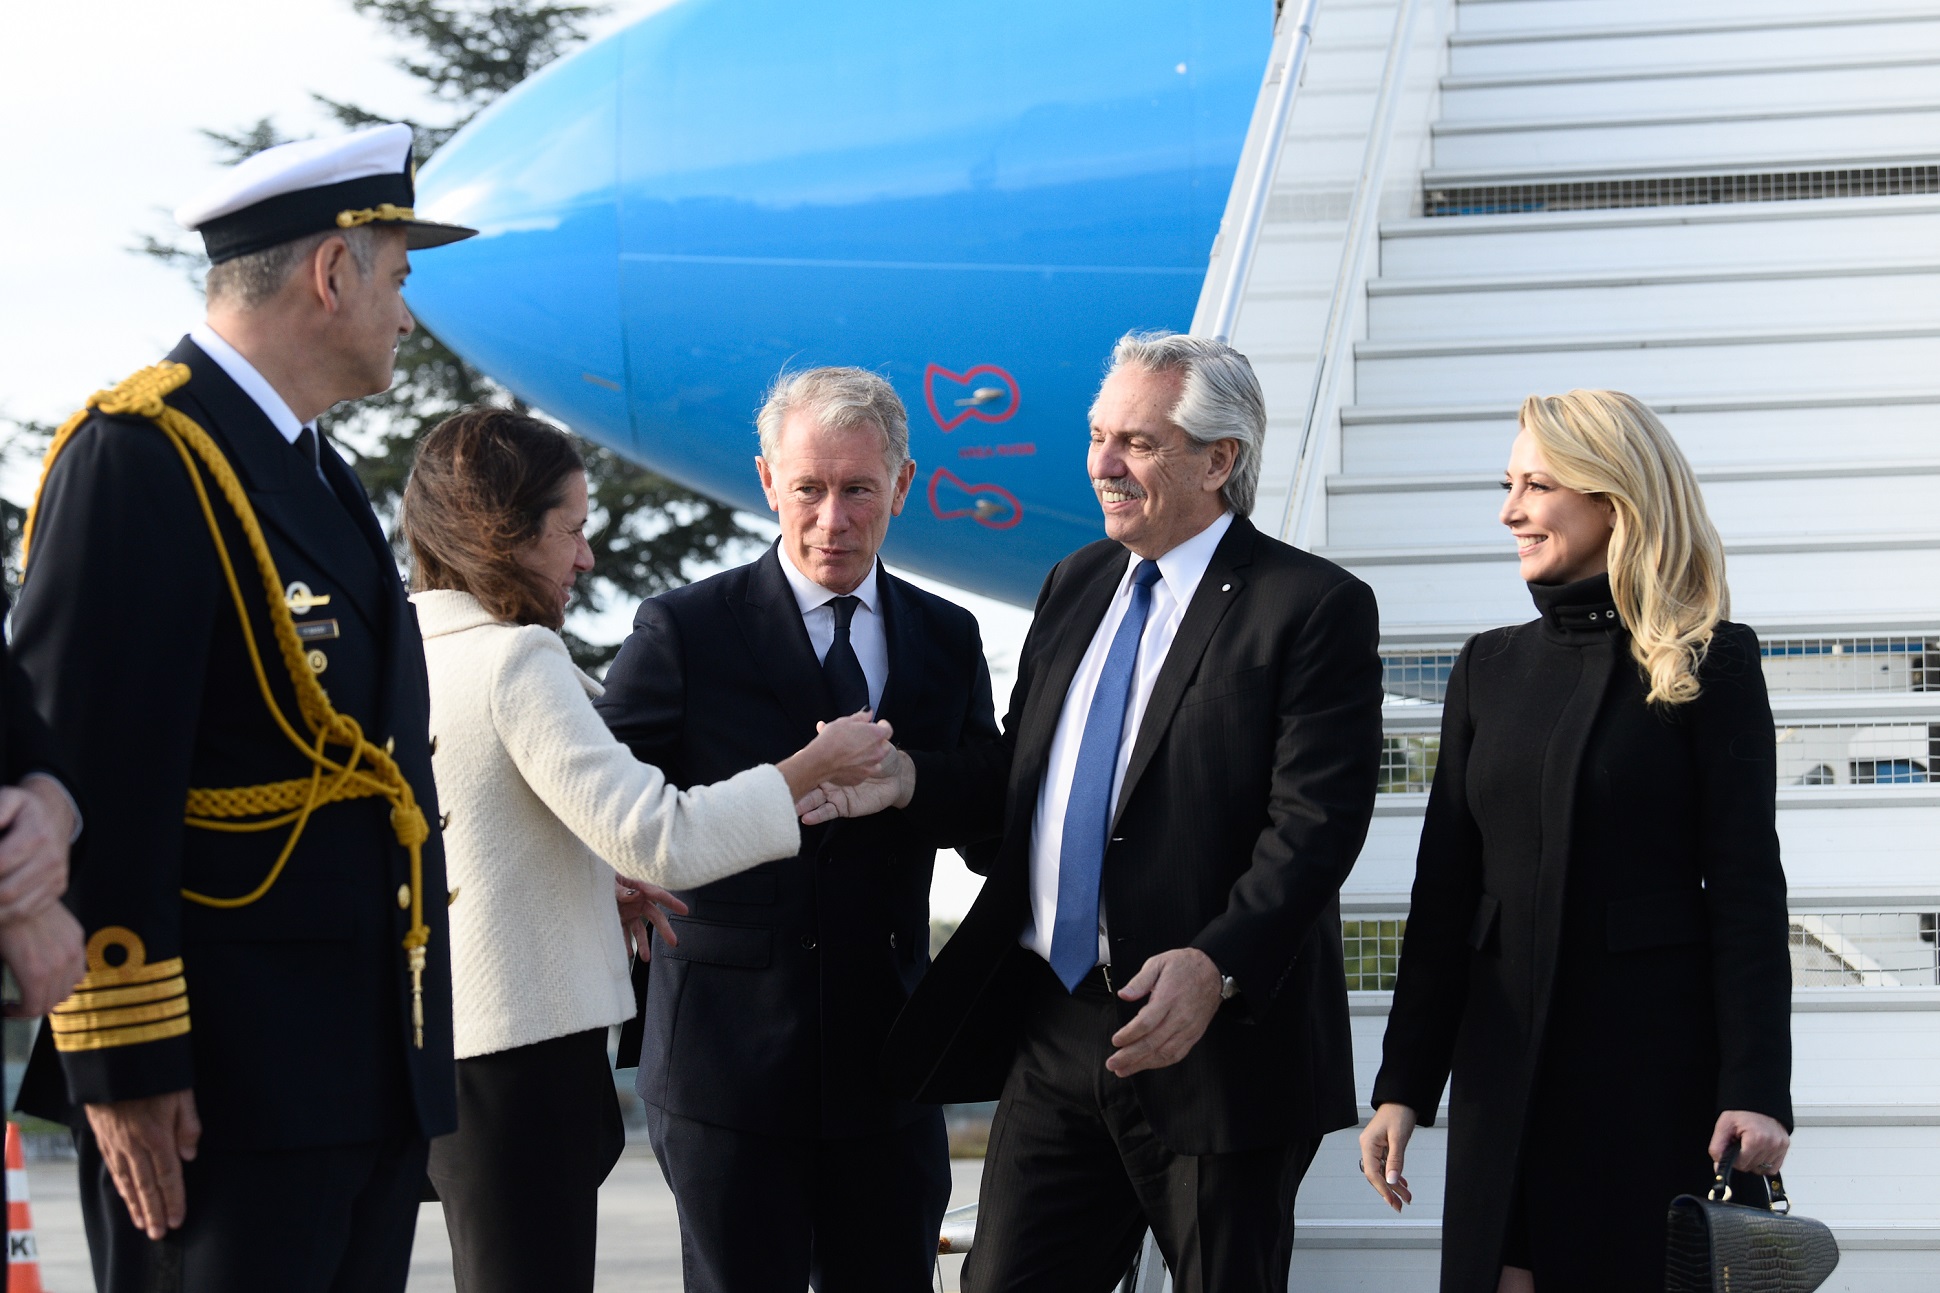 El presidente Alberto Fernández llegó a Francia para participar del Foro de París sobre la Paz